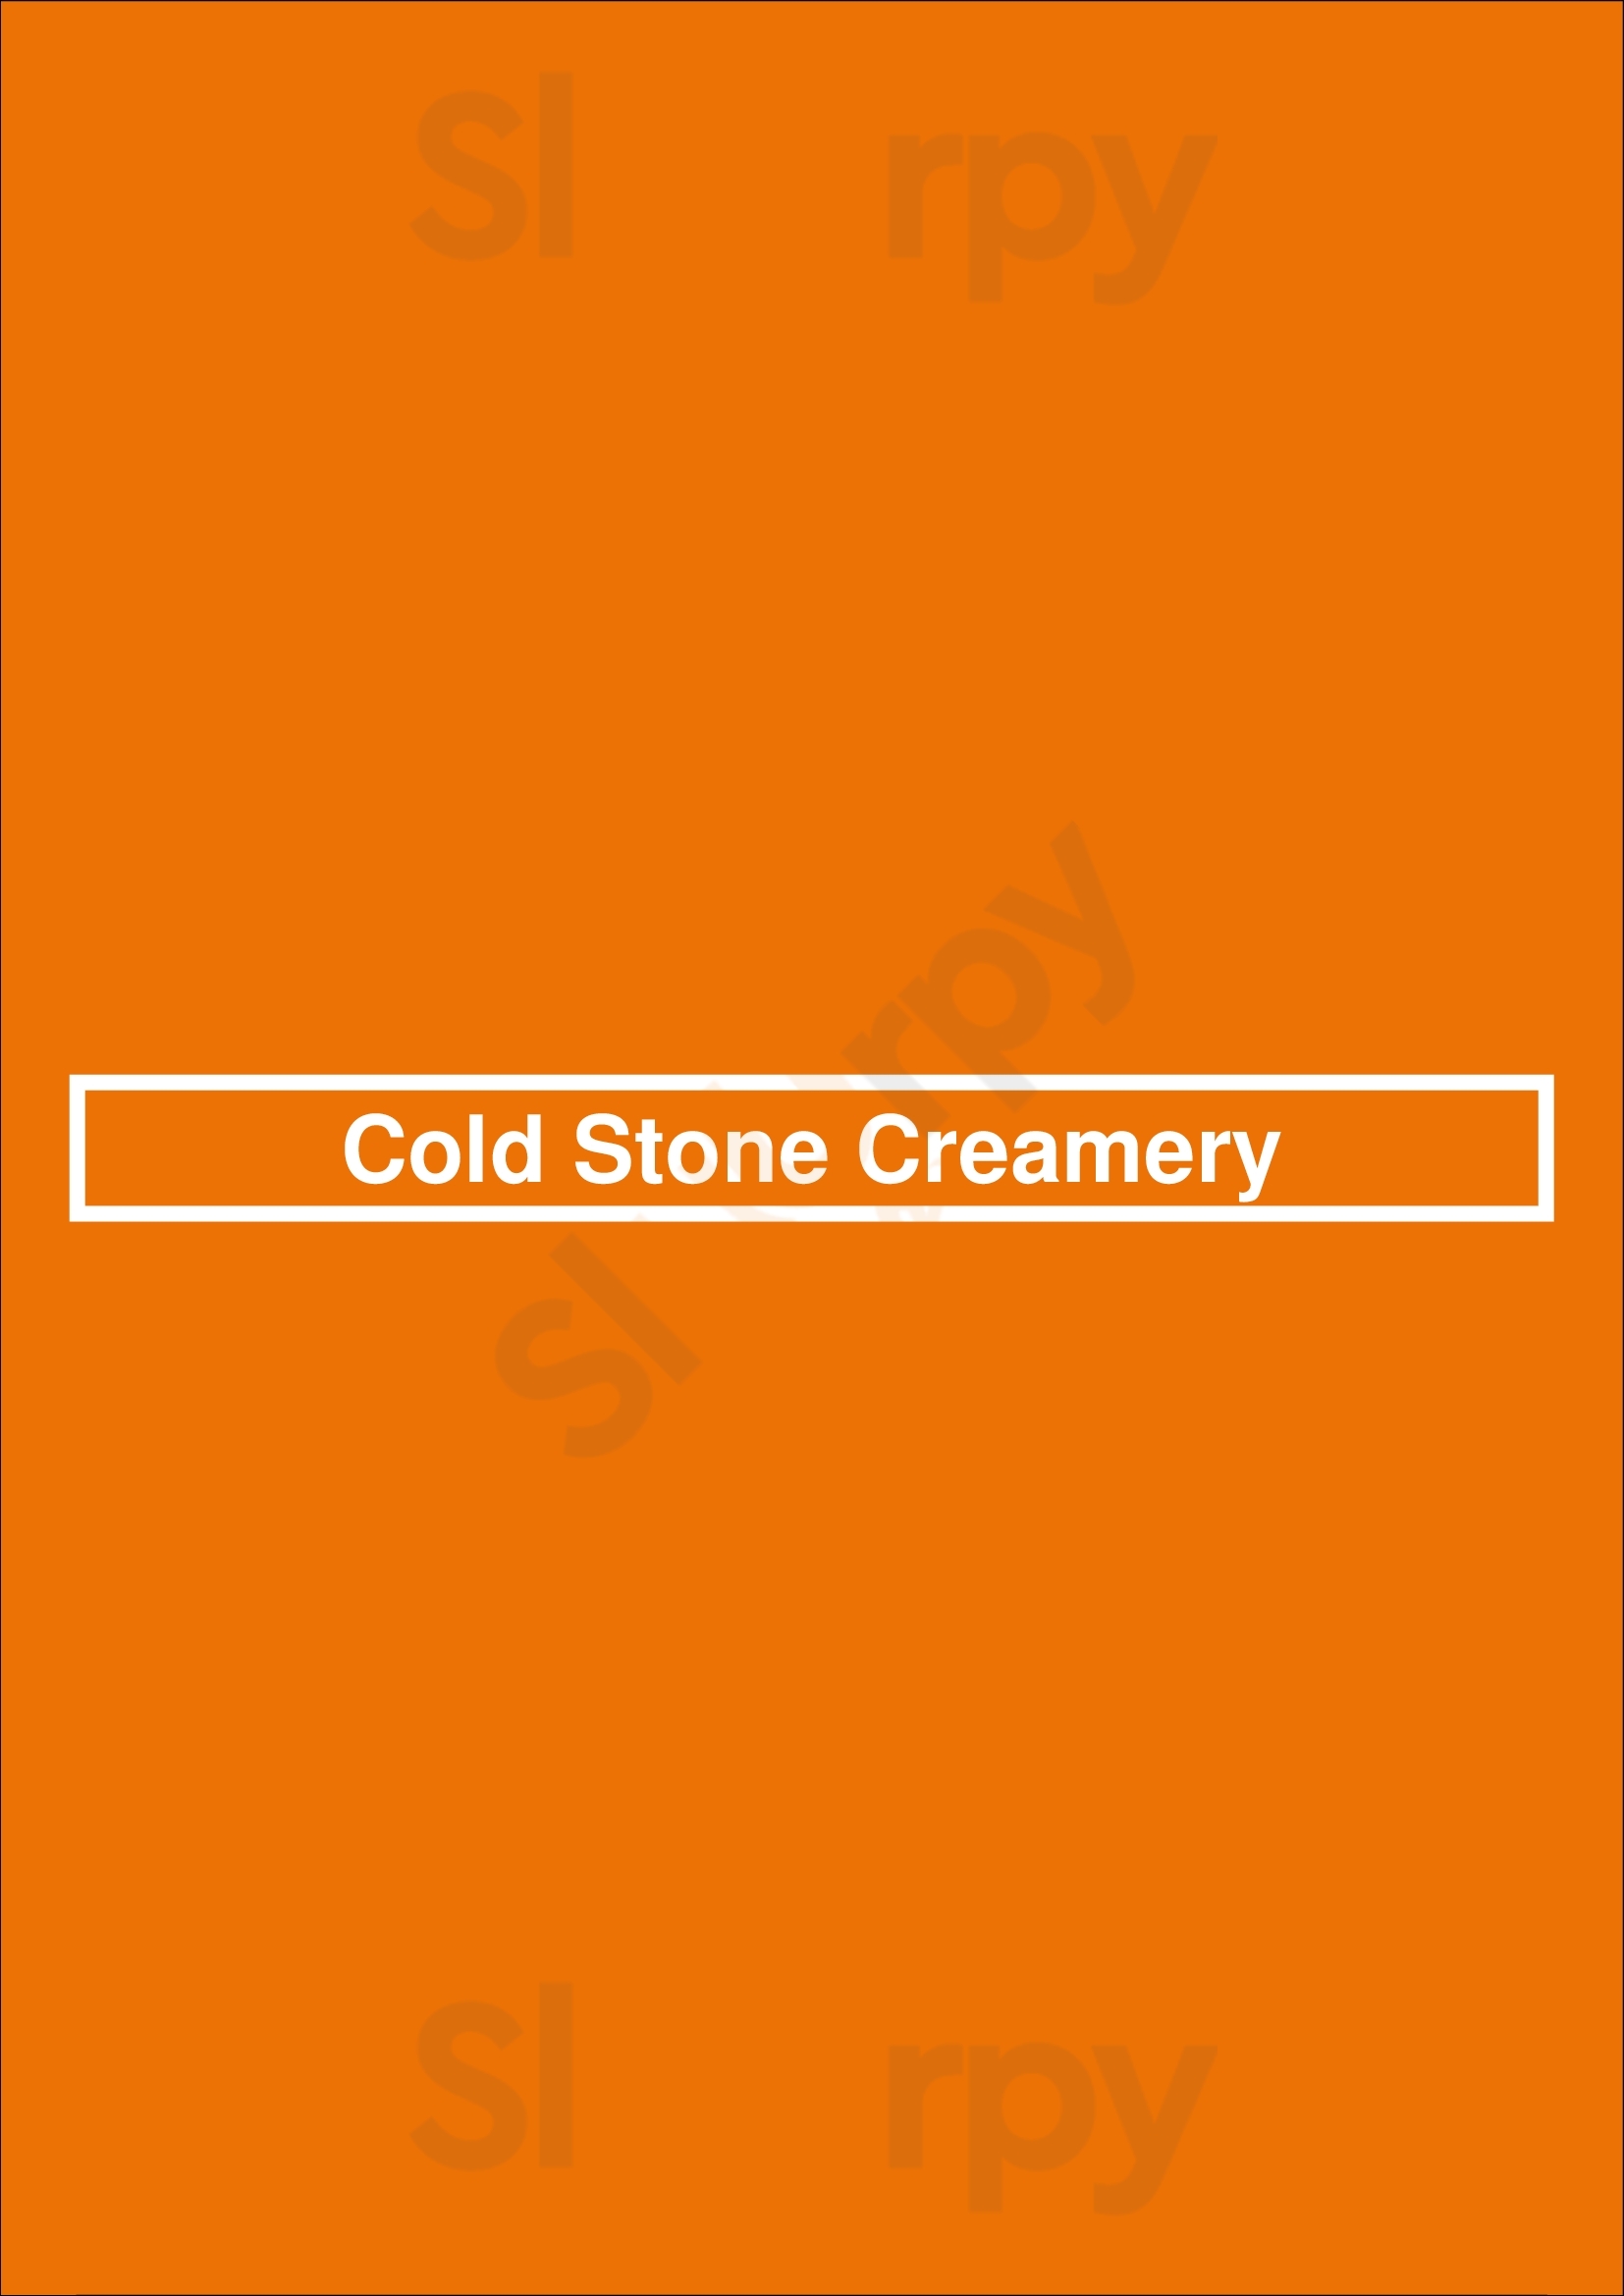 Cold Stone Creamery El Paso Menu - 1